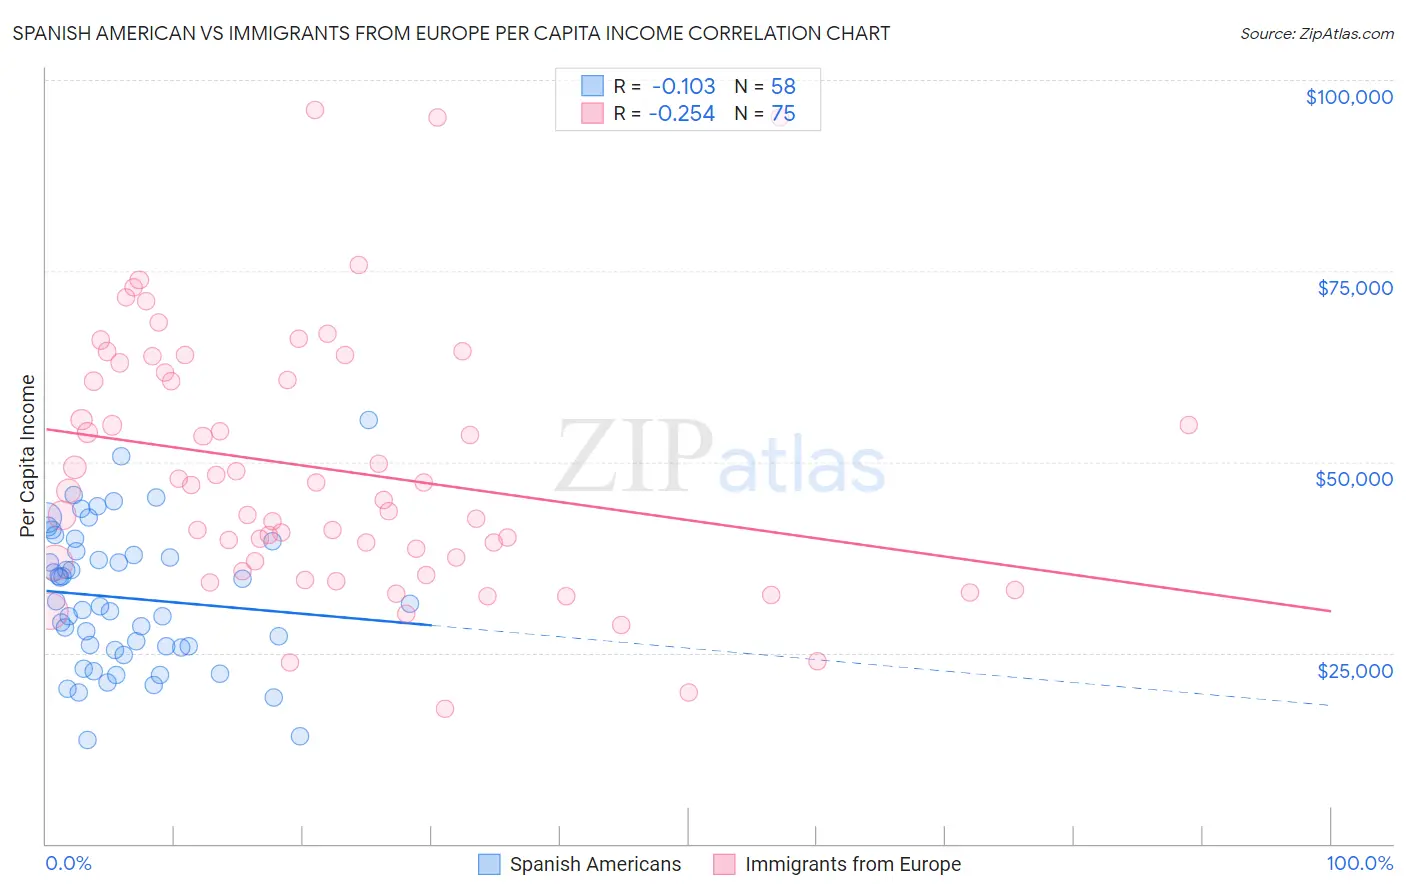 Spanish American vs Immigrants from Europe Per Capita Income